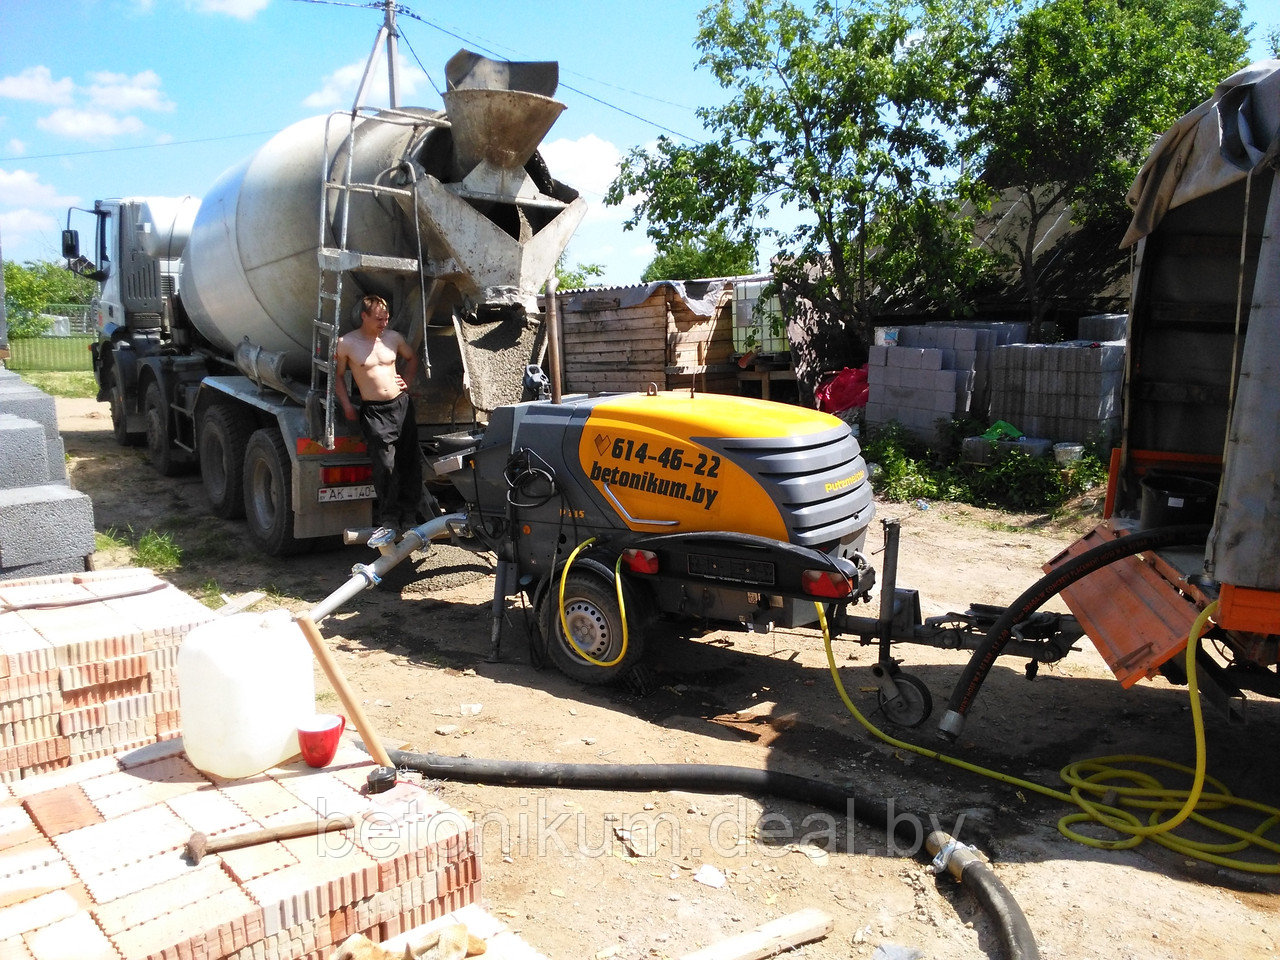 Аренда мини бетононасоса, доставка бетона миксерами 10-11-12м3 и укладка передвижным мини бетононасосом, в Минске, области, РБ.